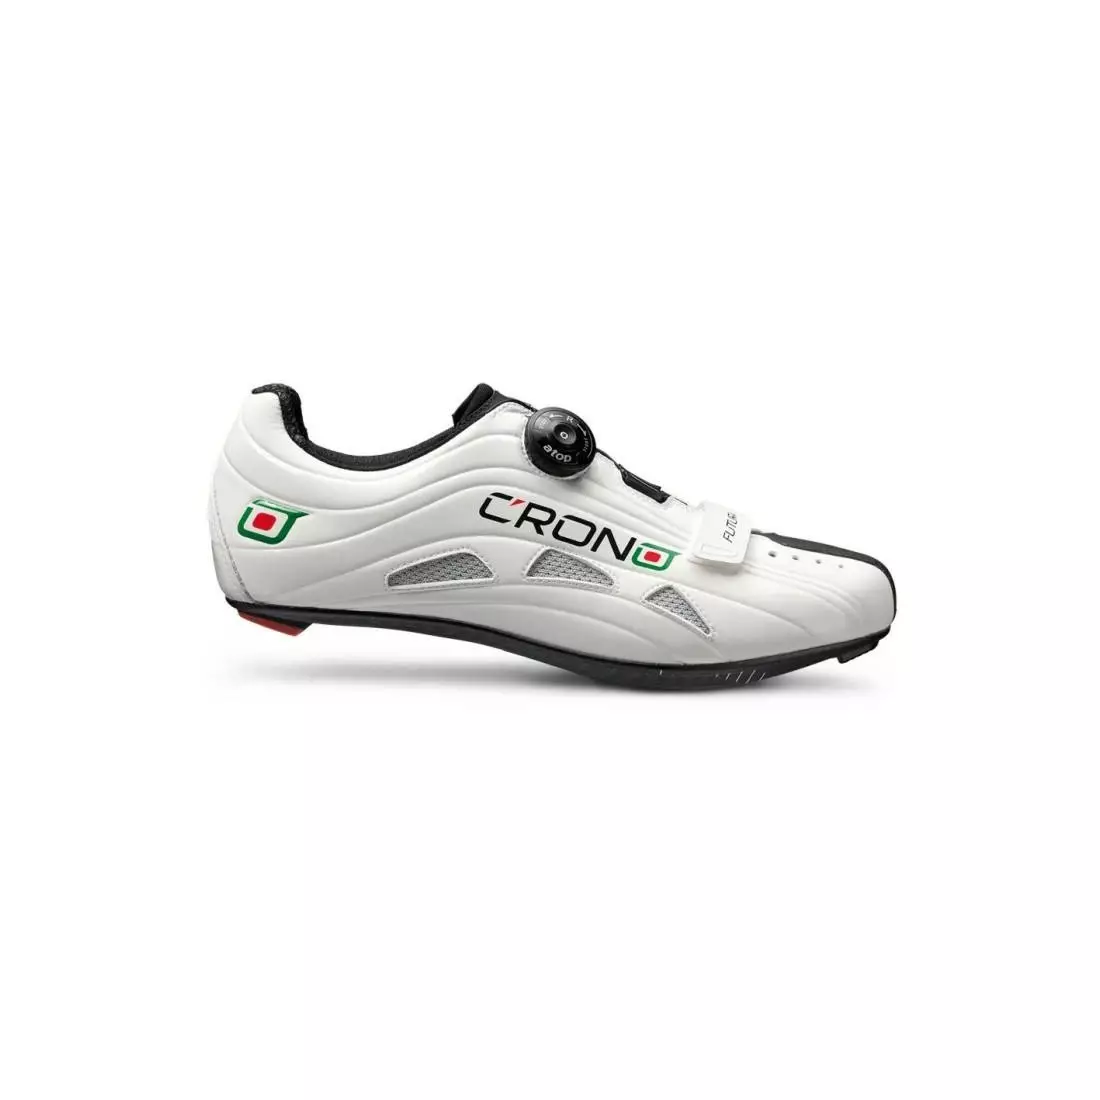 CRONO FUTURA NYLON - silniční cyklistické boty - barva: Bílá